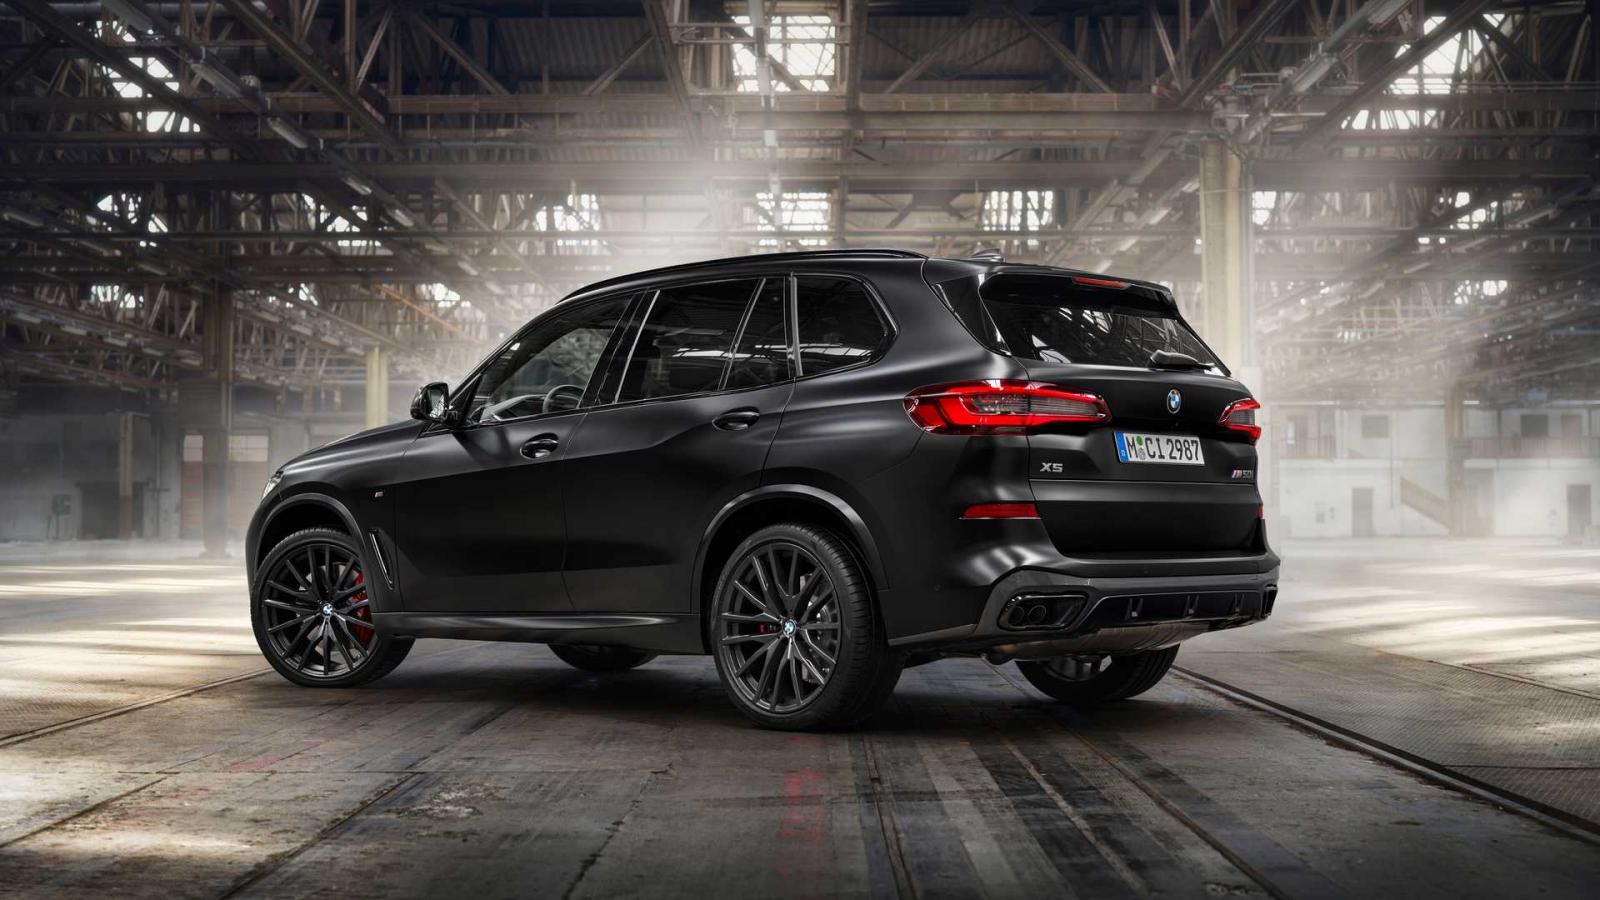 BMW X5 Black Vermilion 2022 đẹp mắt với mọi góc nhìn.